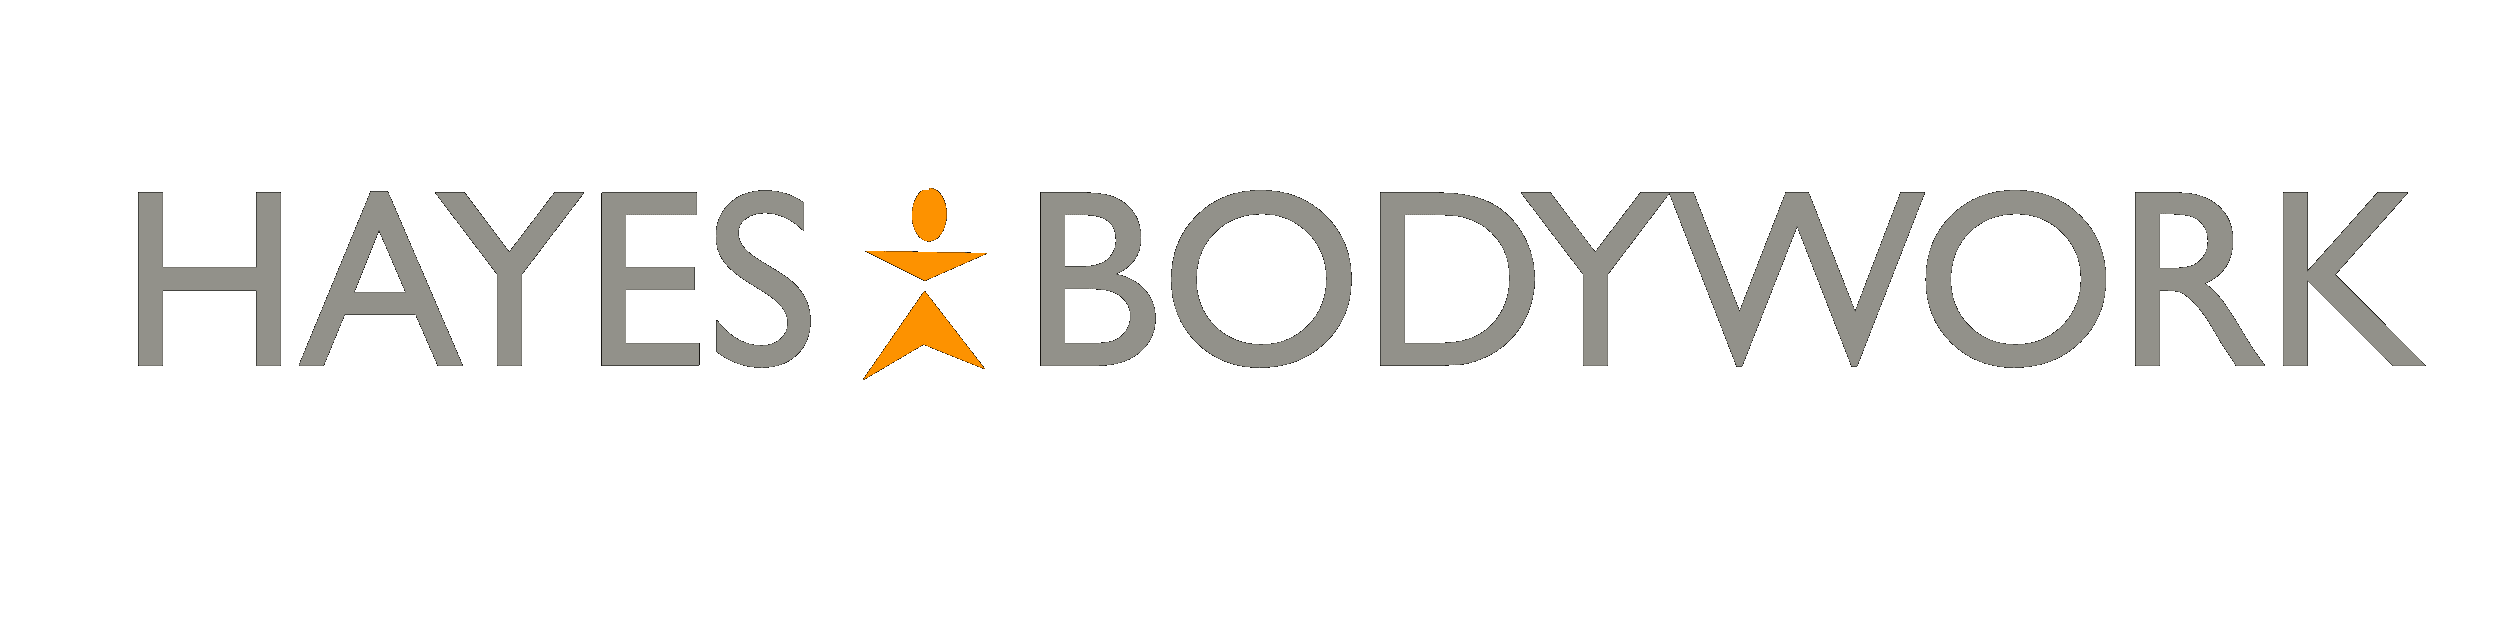 Hayes Bodywork Logo